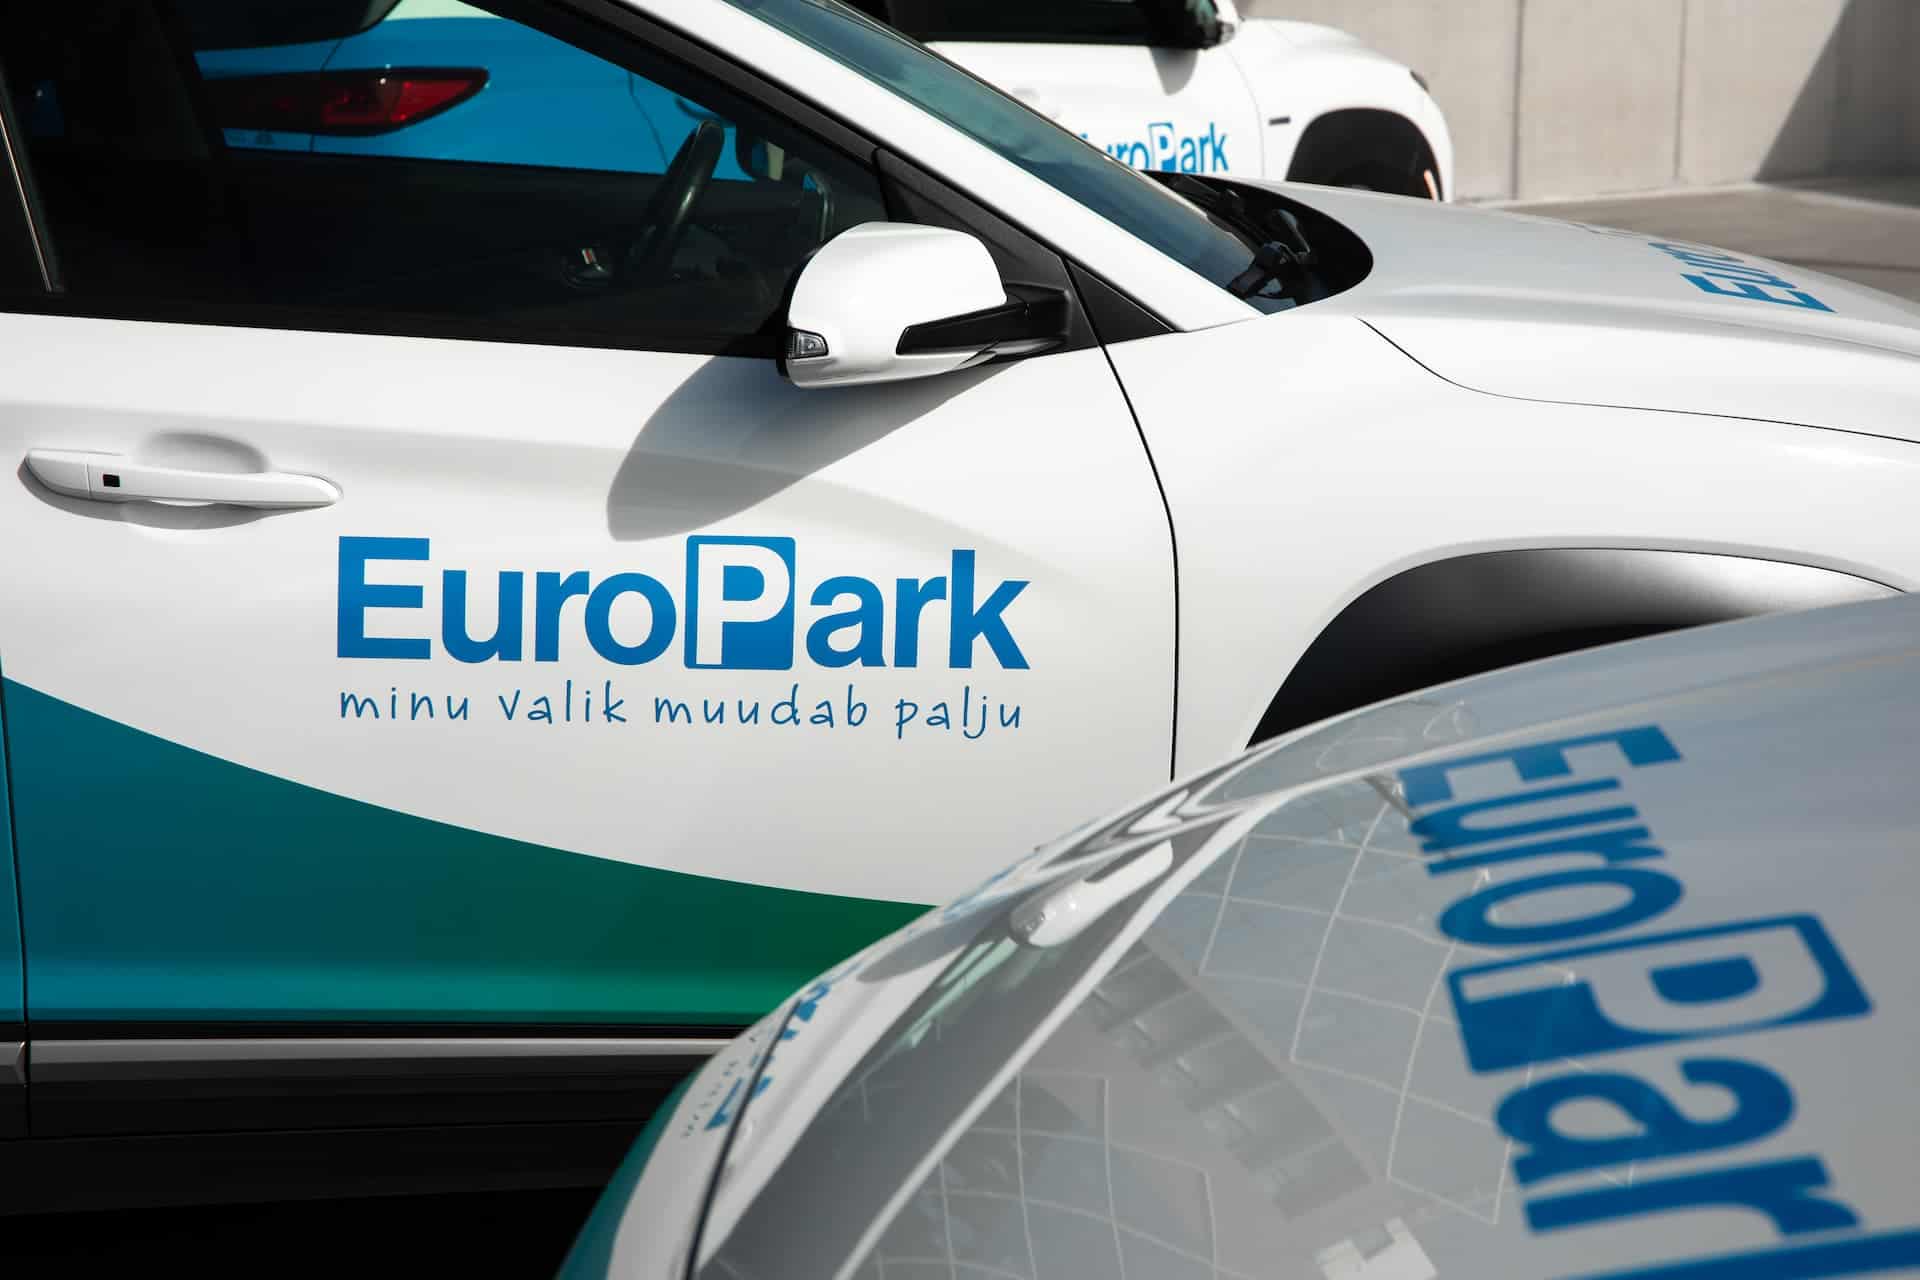 Me teame parkimisest kõike! Pildil on kolm EuroPark autot.